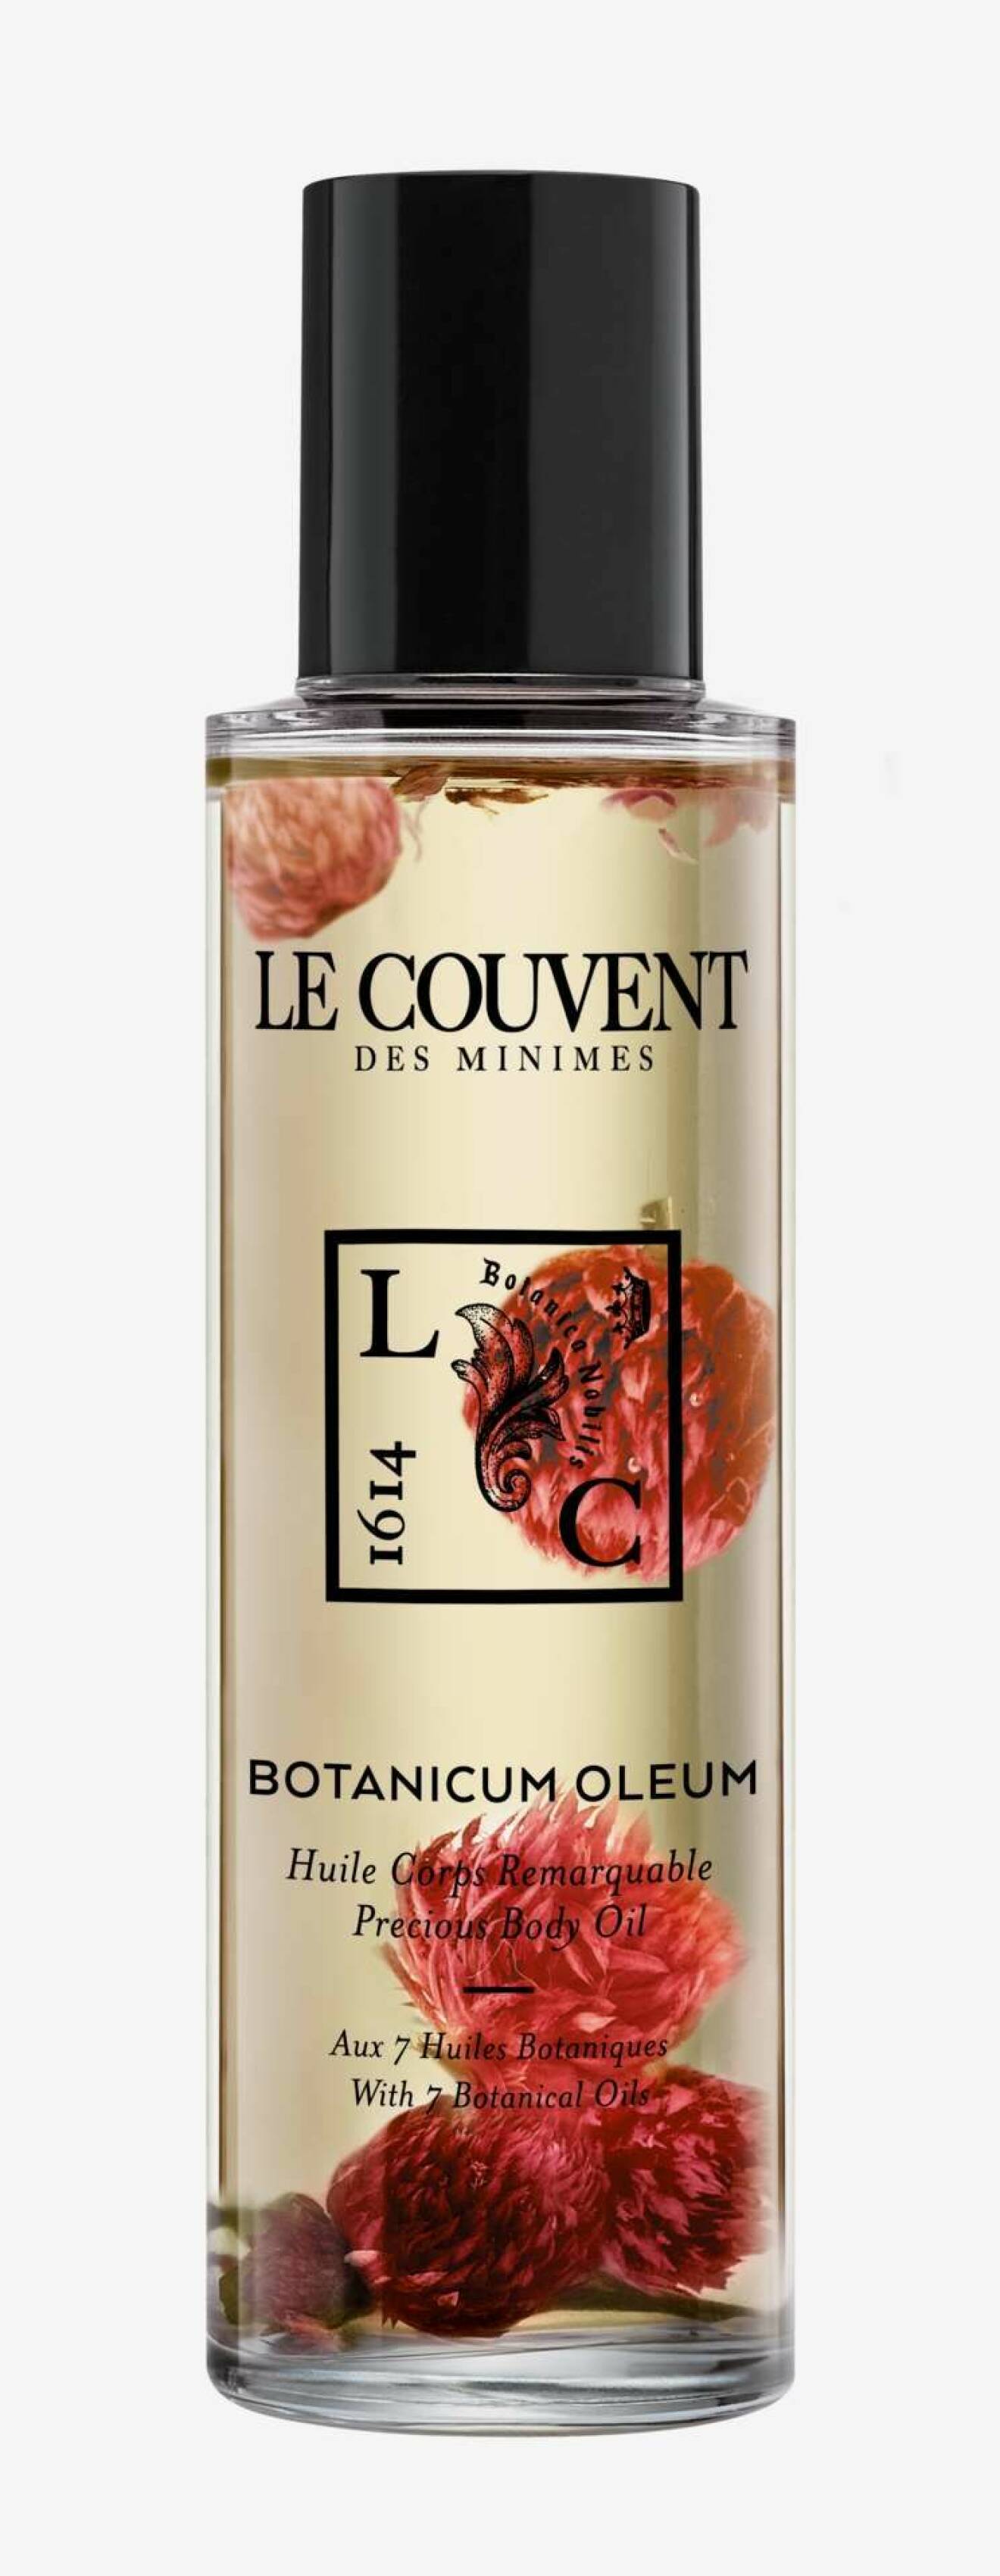 Kroppsoljan Botanicum oleum precious body oil från Le Couvent ger lyx och näring i ett.